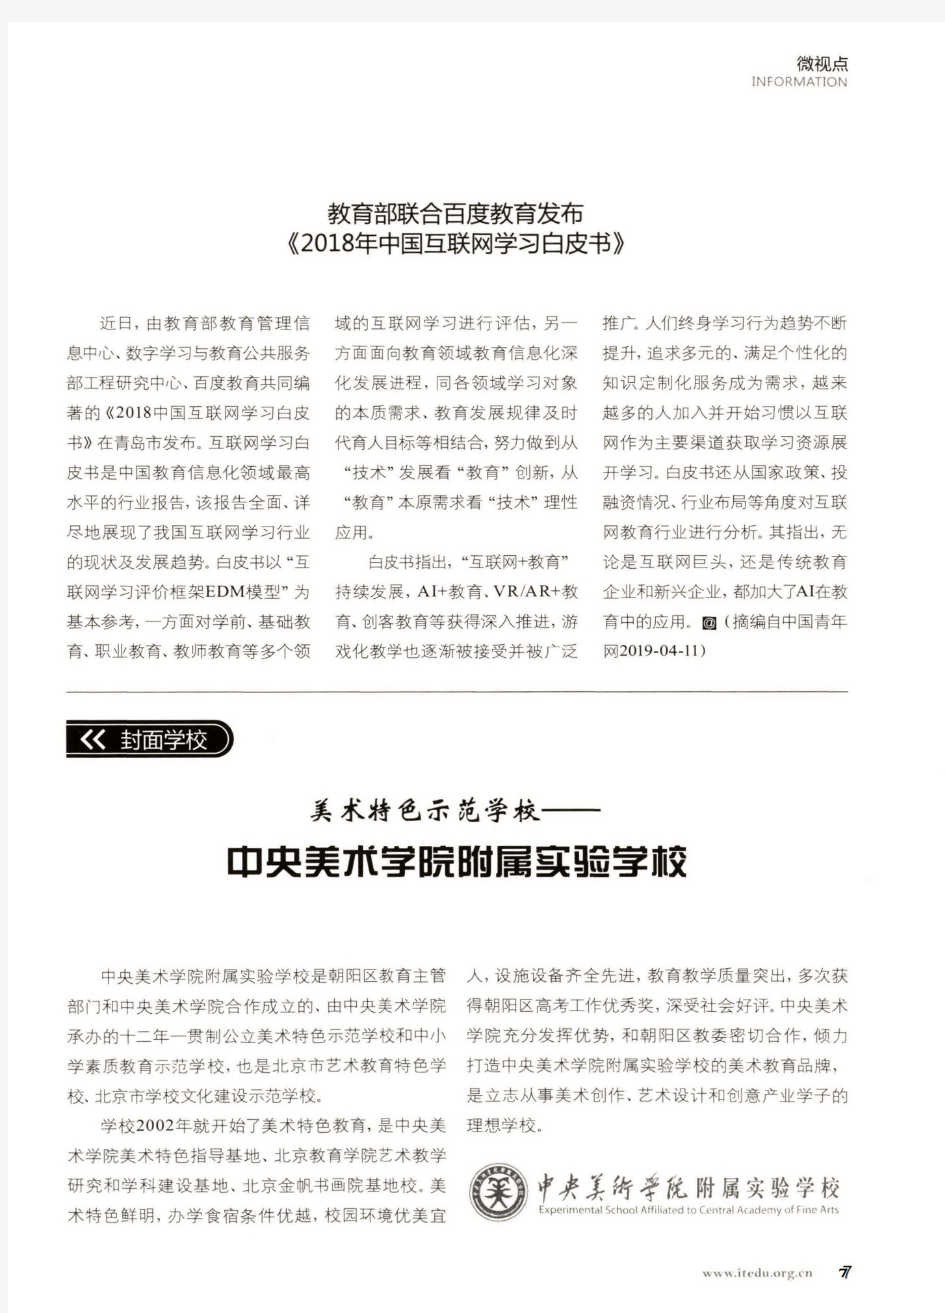 教育部联合百度教育发布《2018年中国互联网学习白皮书》